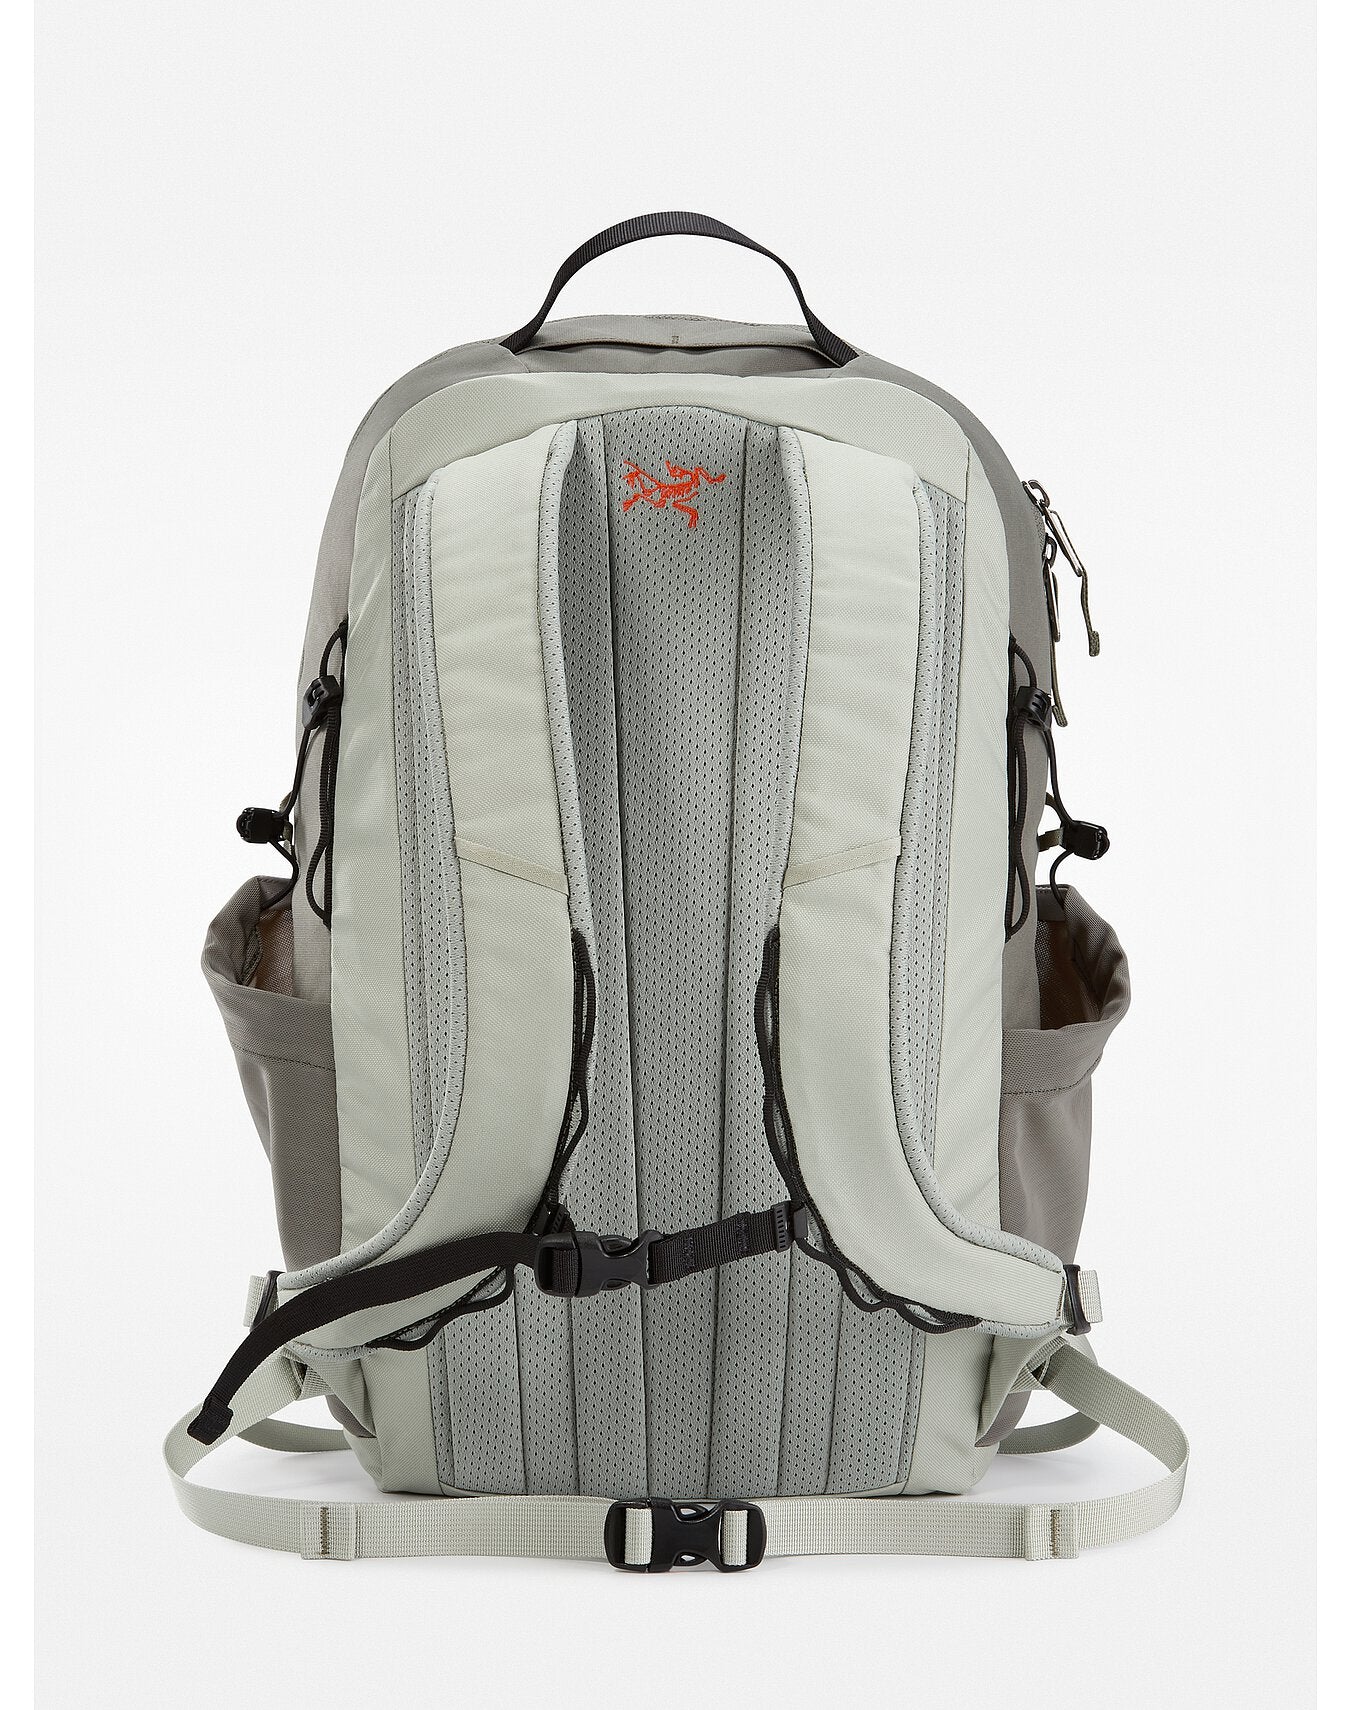 Arc'teryx Mantis 26 Backpack – OutdoorsInc.com